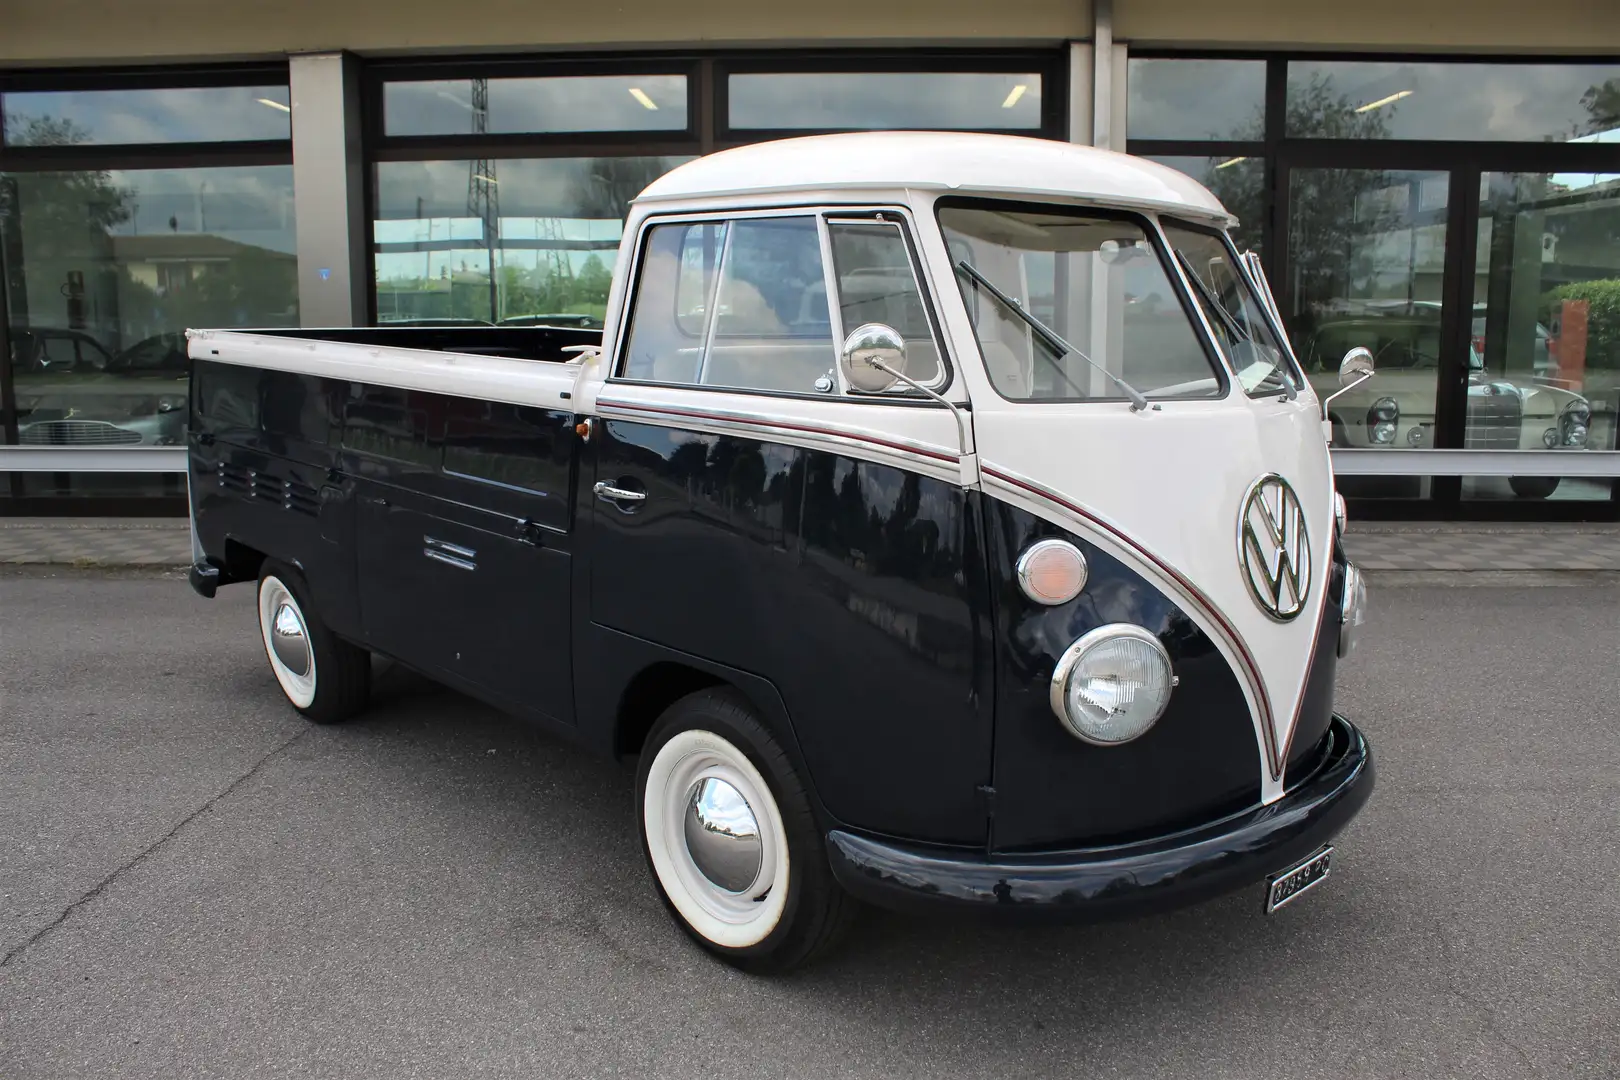 Volkswagen T1 usata a Isorella - Brescia - Bs per € 69.900,-